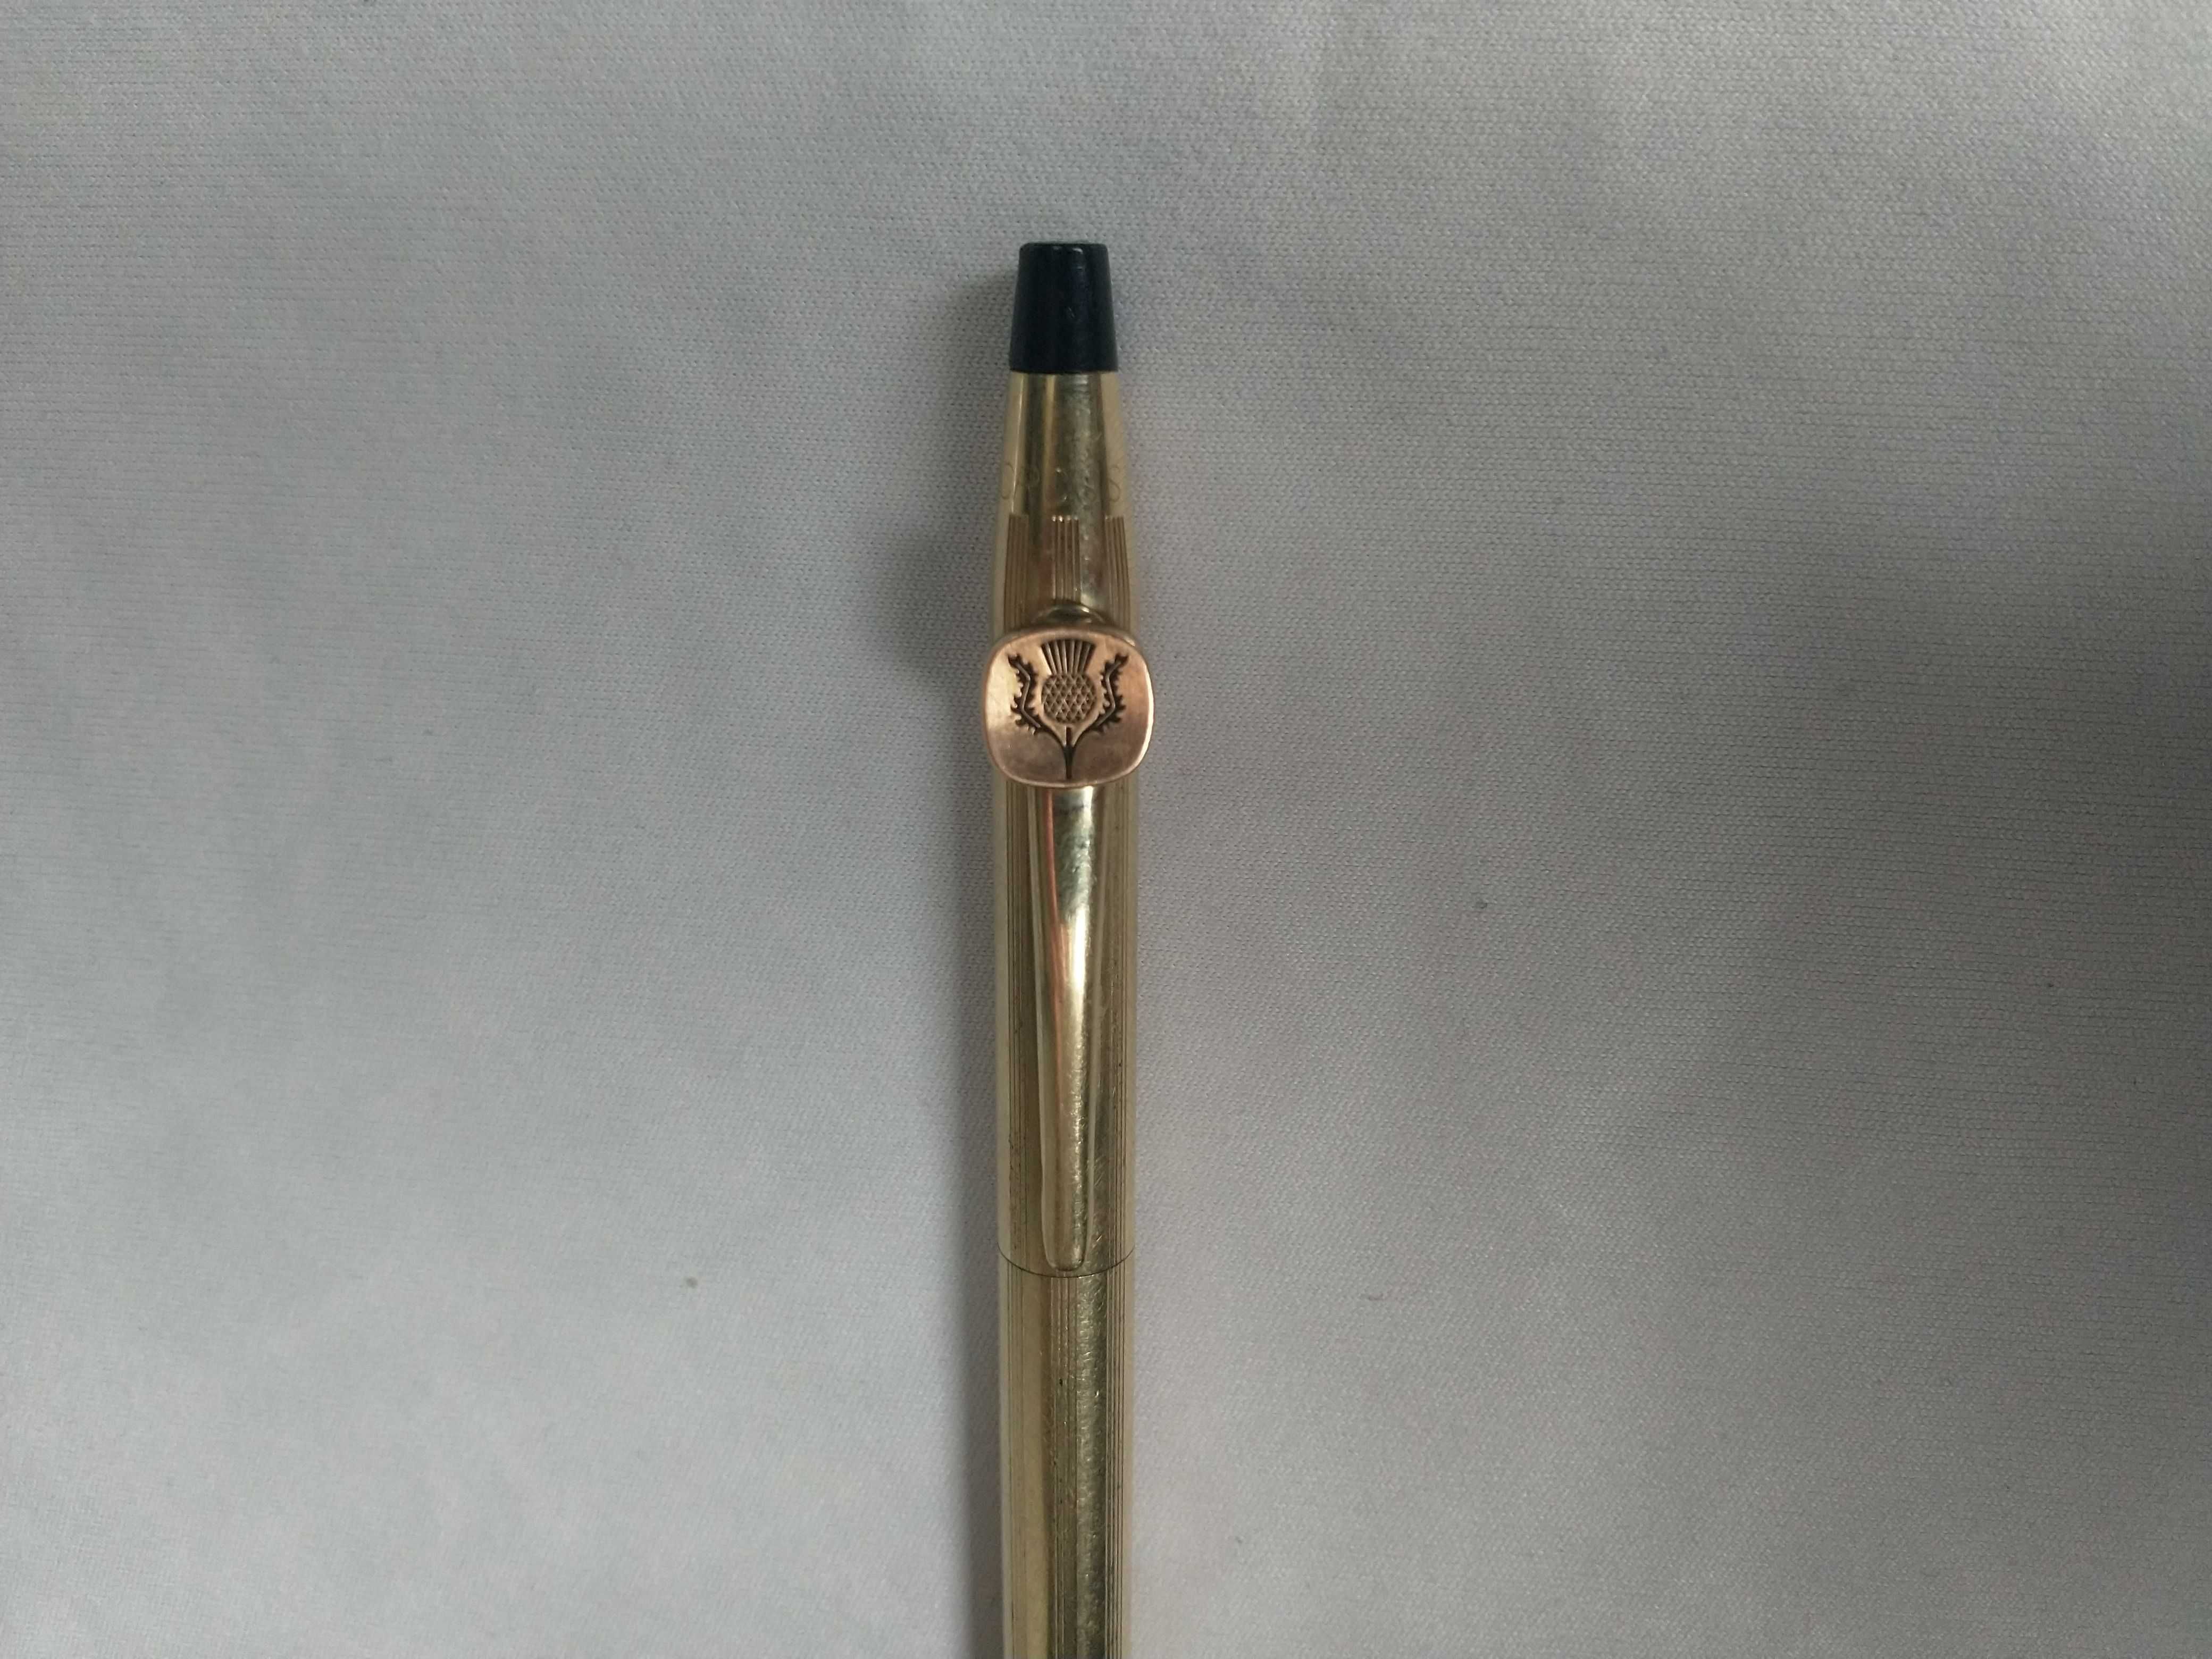 Długopis zabytkowy Cross Made in Usa 1/20 12KT Gold Filled